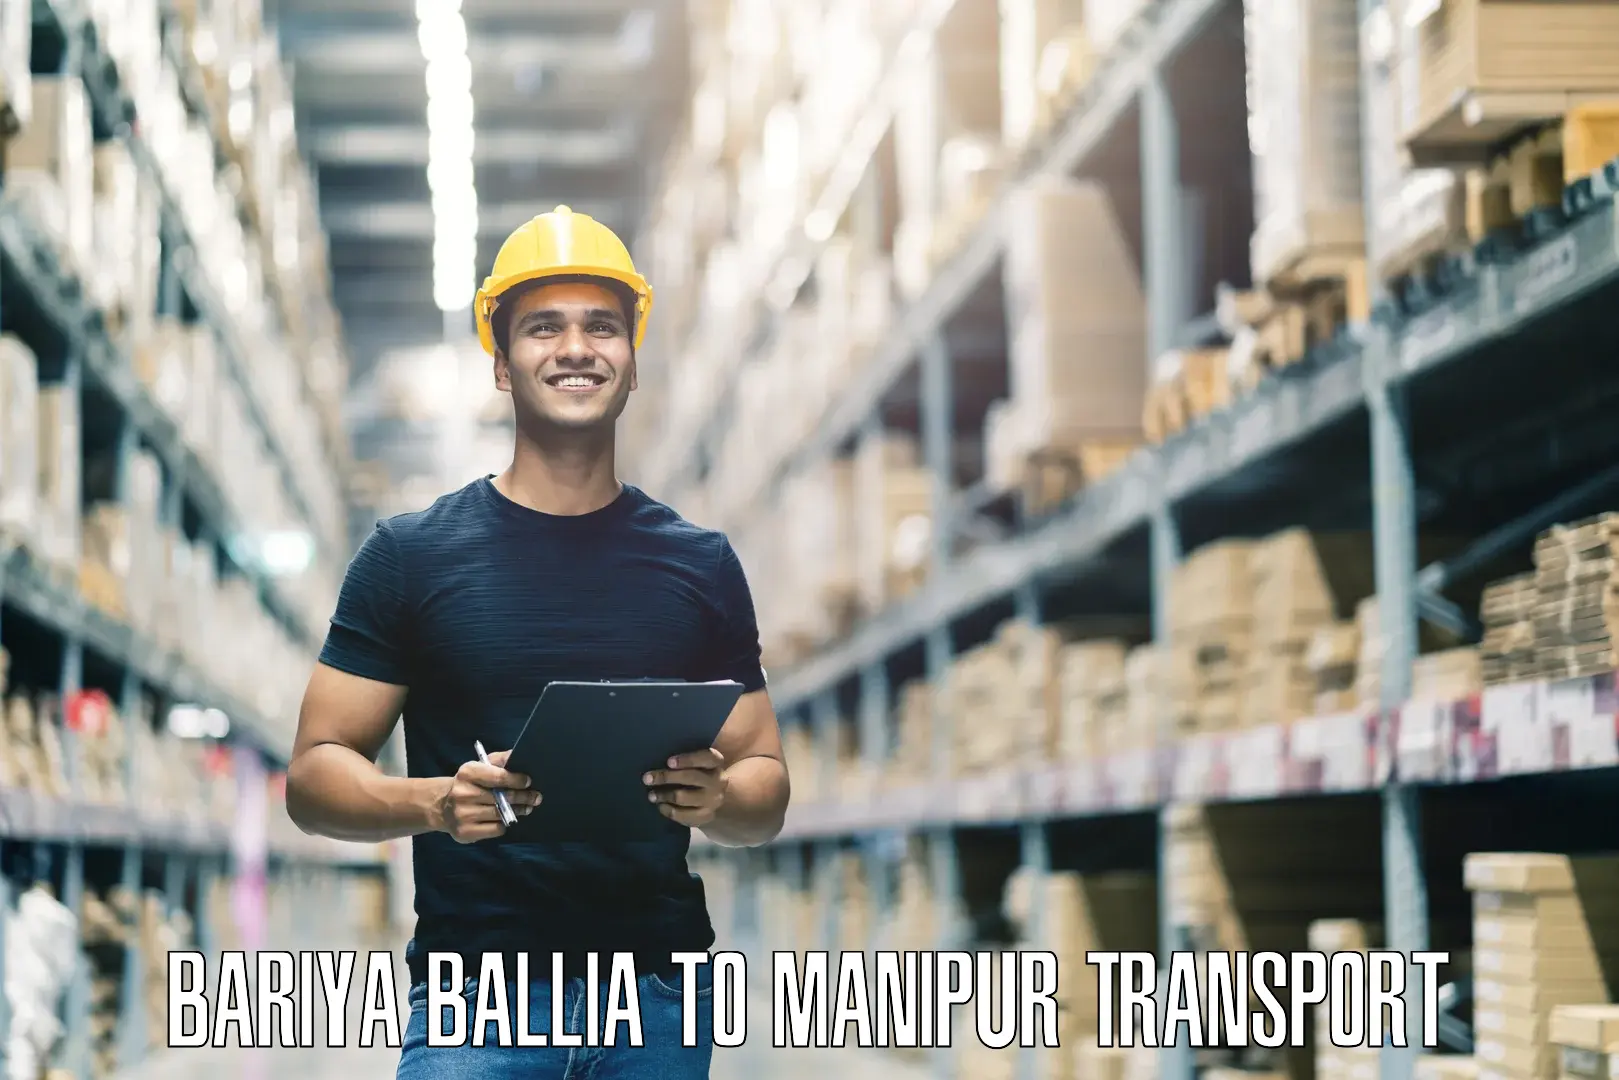 Furniture transport service Bariya Ballia to Churachandpur